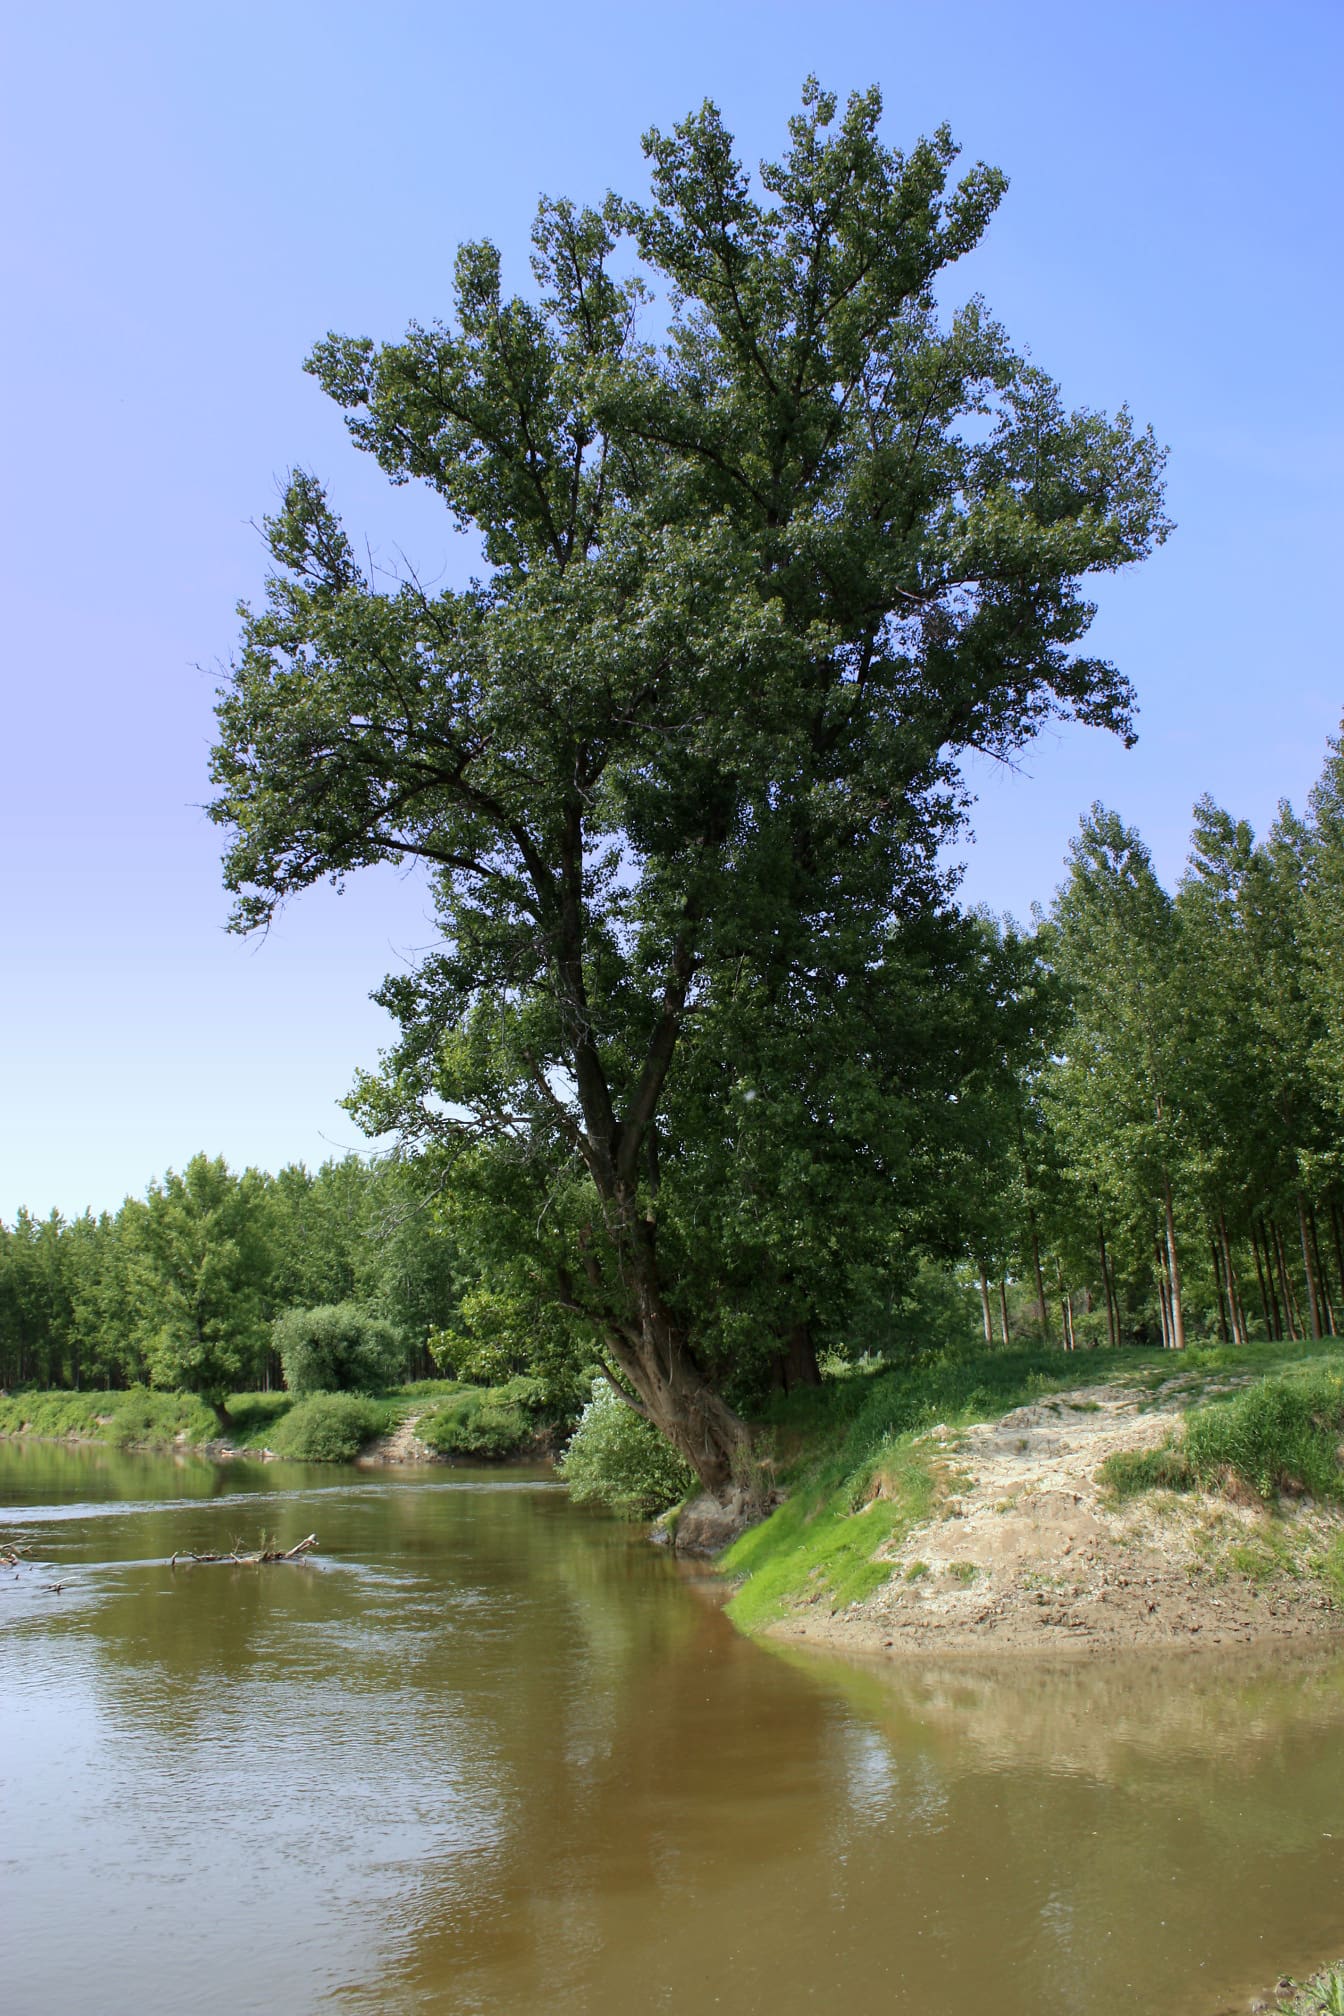 Nehir ağzında büyük ağaç gövdesi